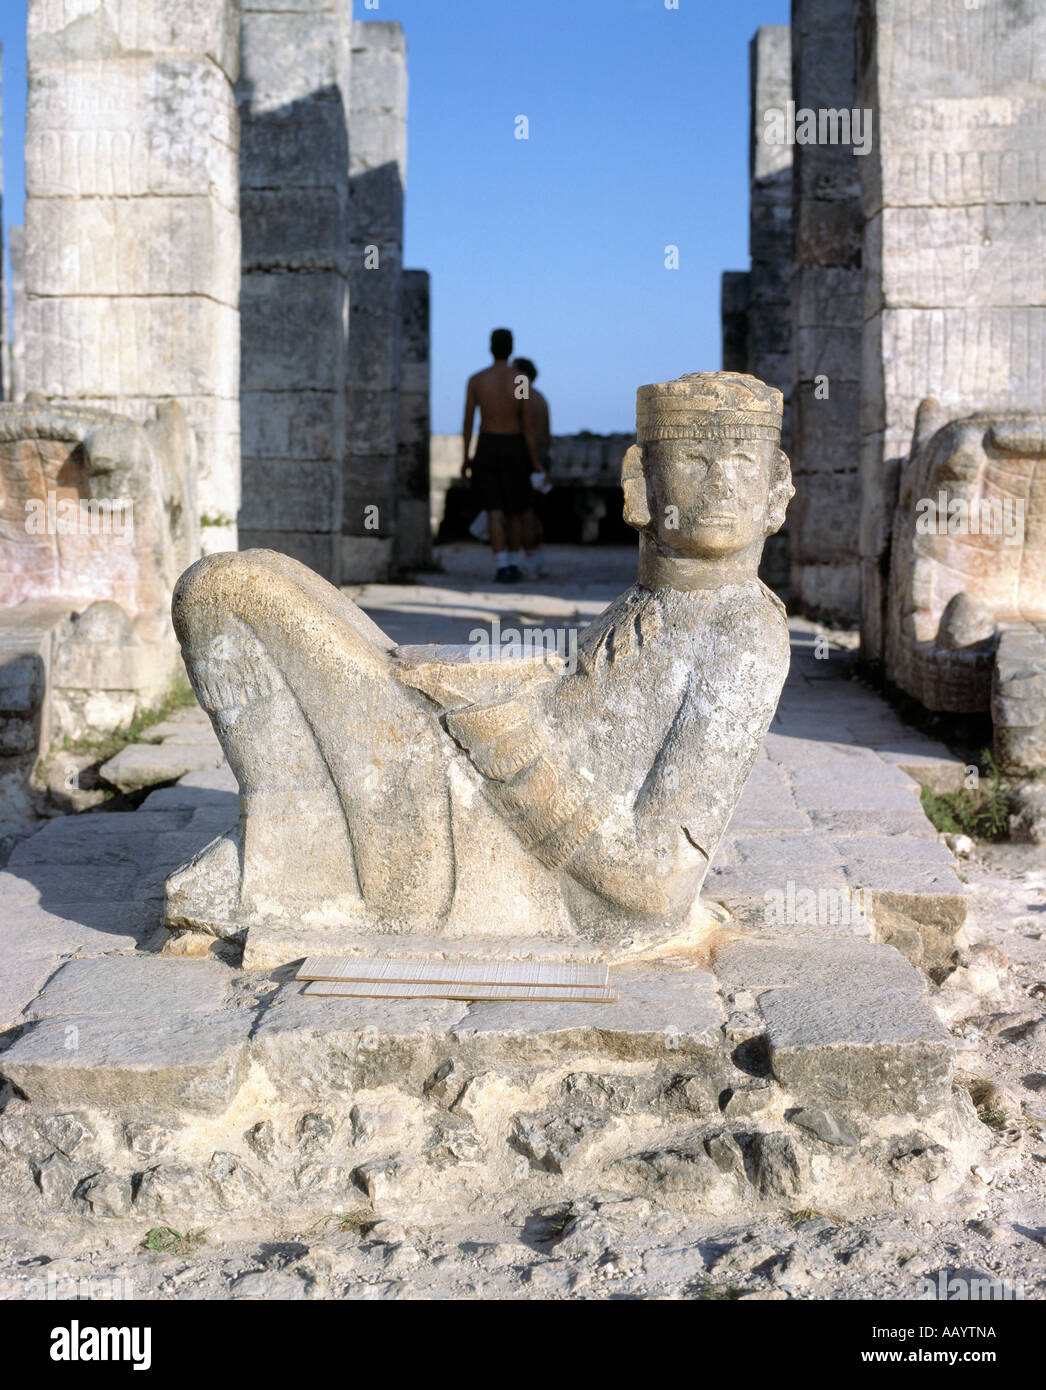 Templo de los guerreros, con una figura de piedra en primer plano sosteniendo un cuenco sobre su estómago reliquias de una tribu centroamericana, Foto de stock